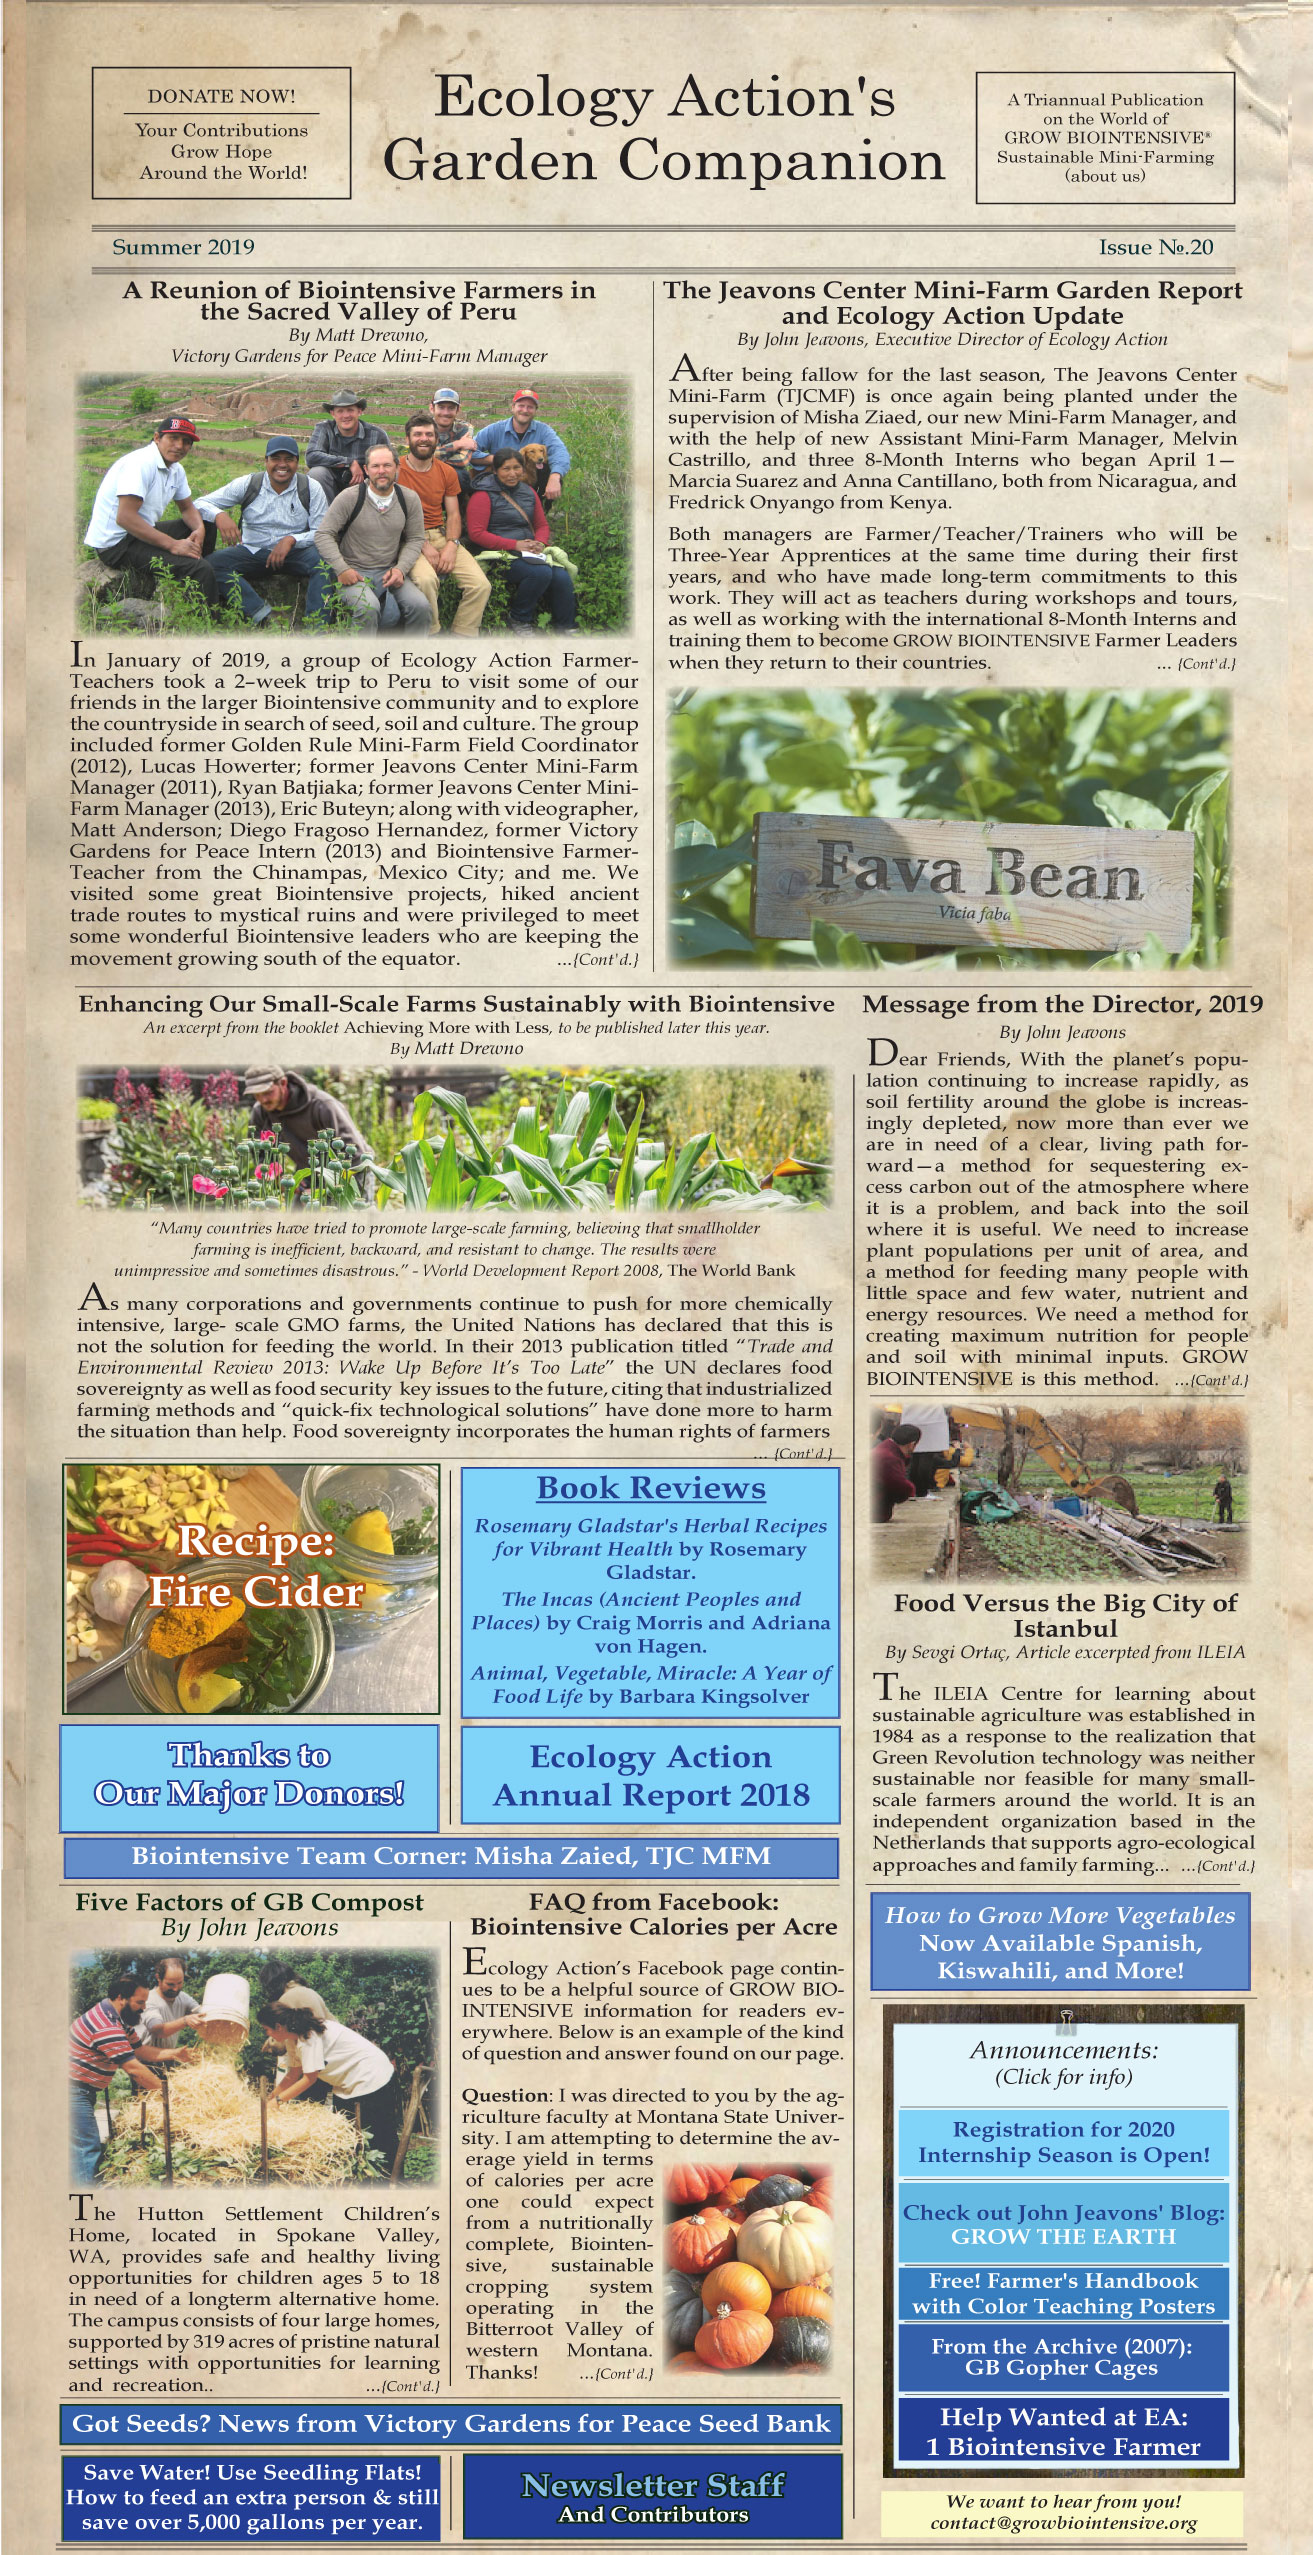 Garden Companion Newsletter Issue No. 20